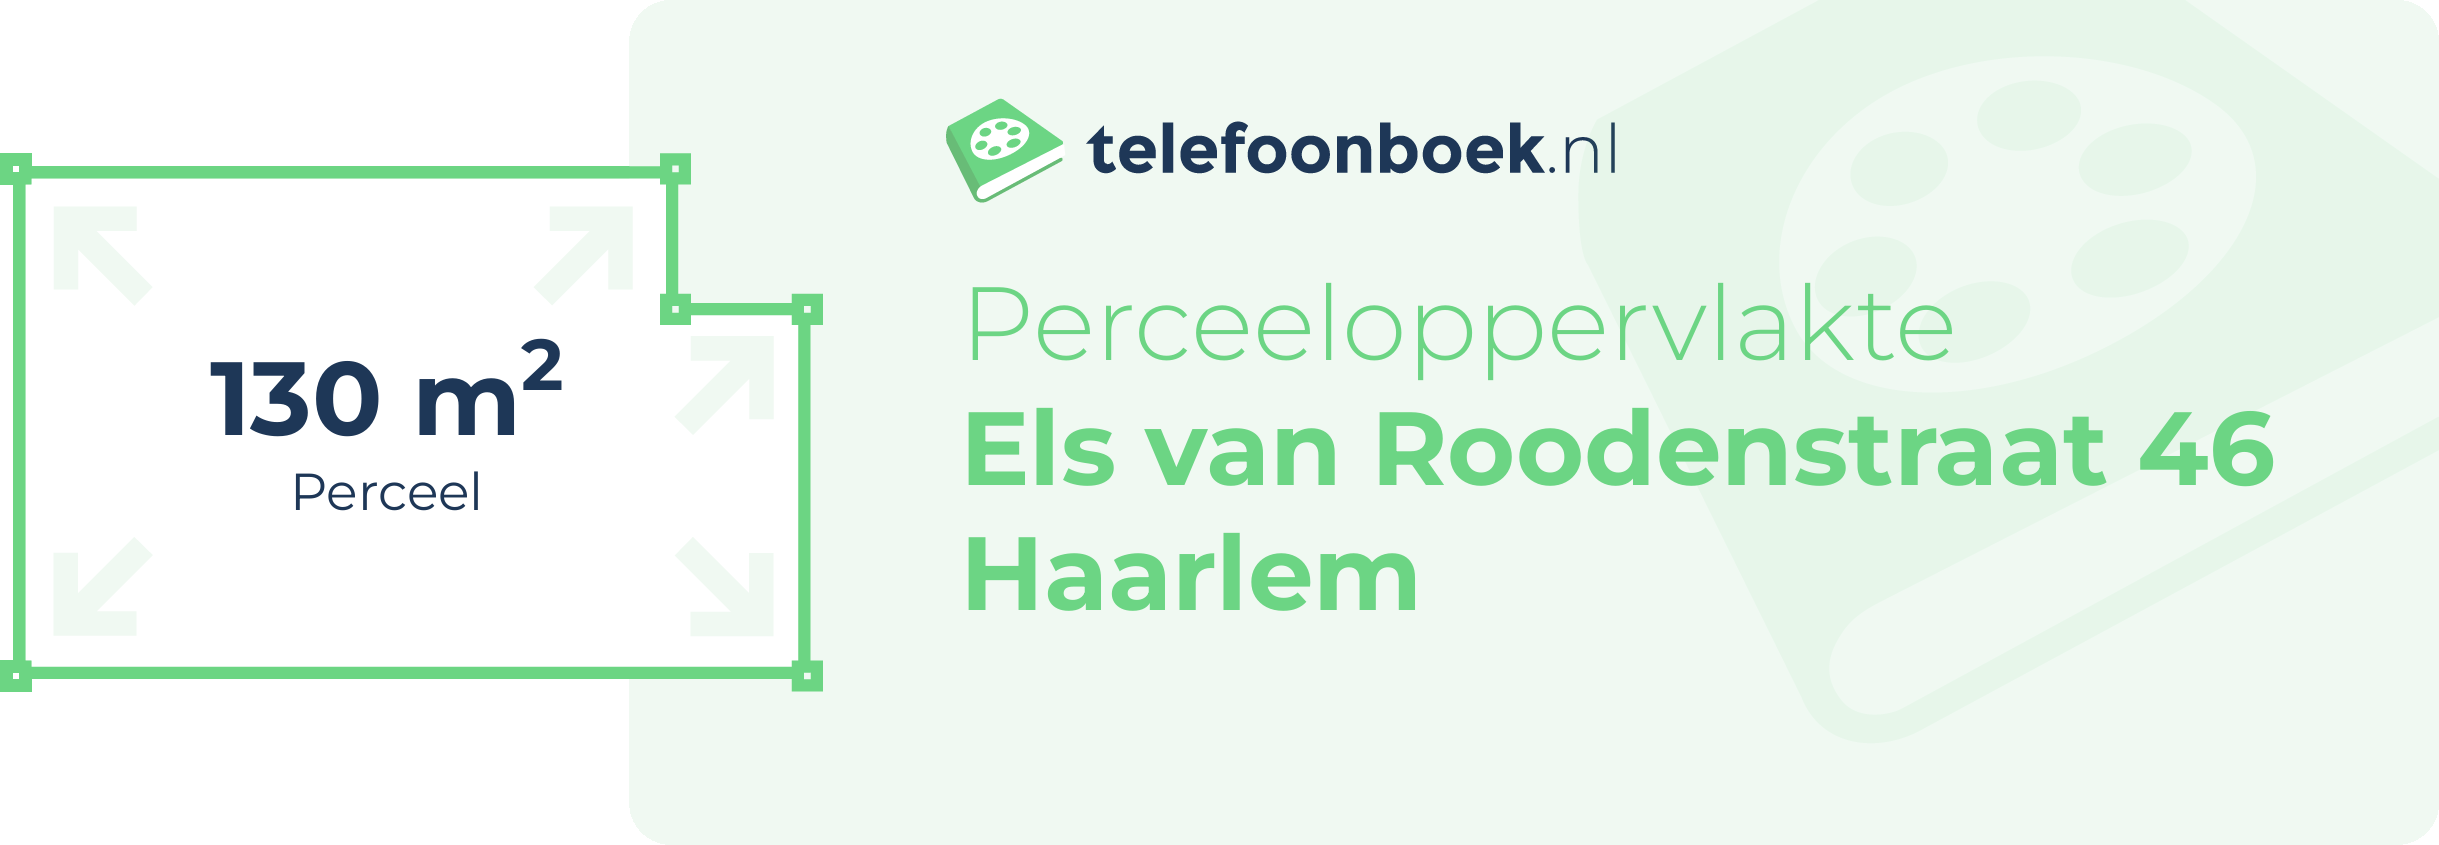 Perceeloppervlakte Els Van Roodenstraat 46 Haarlem